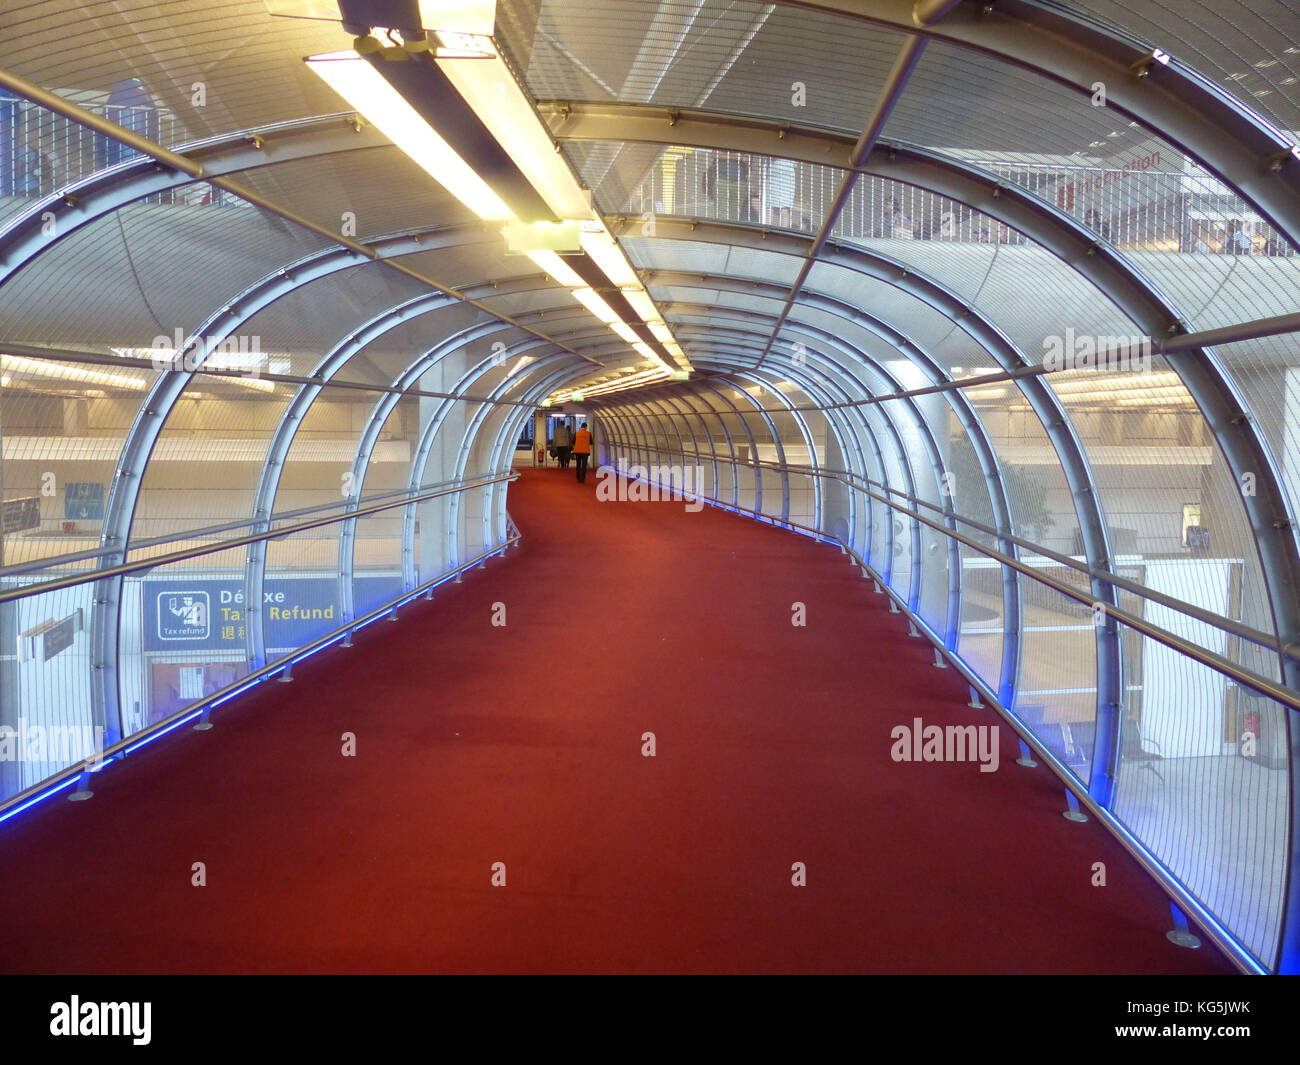 Moquette rossa skywalk presso l'aeroporto internazionale Charles de Gaulle Foto Stock